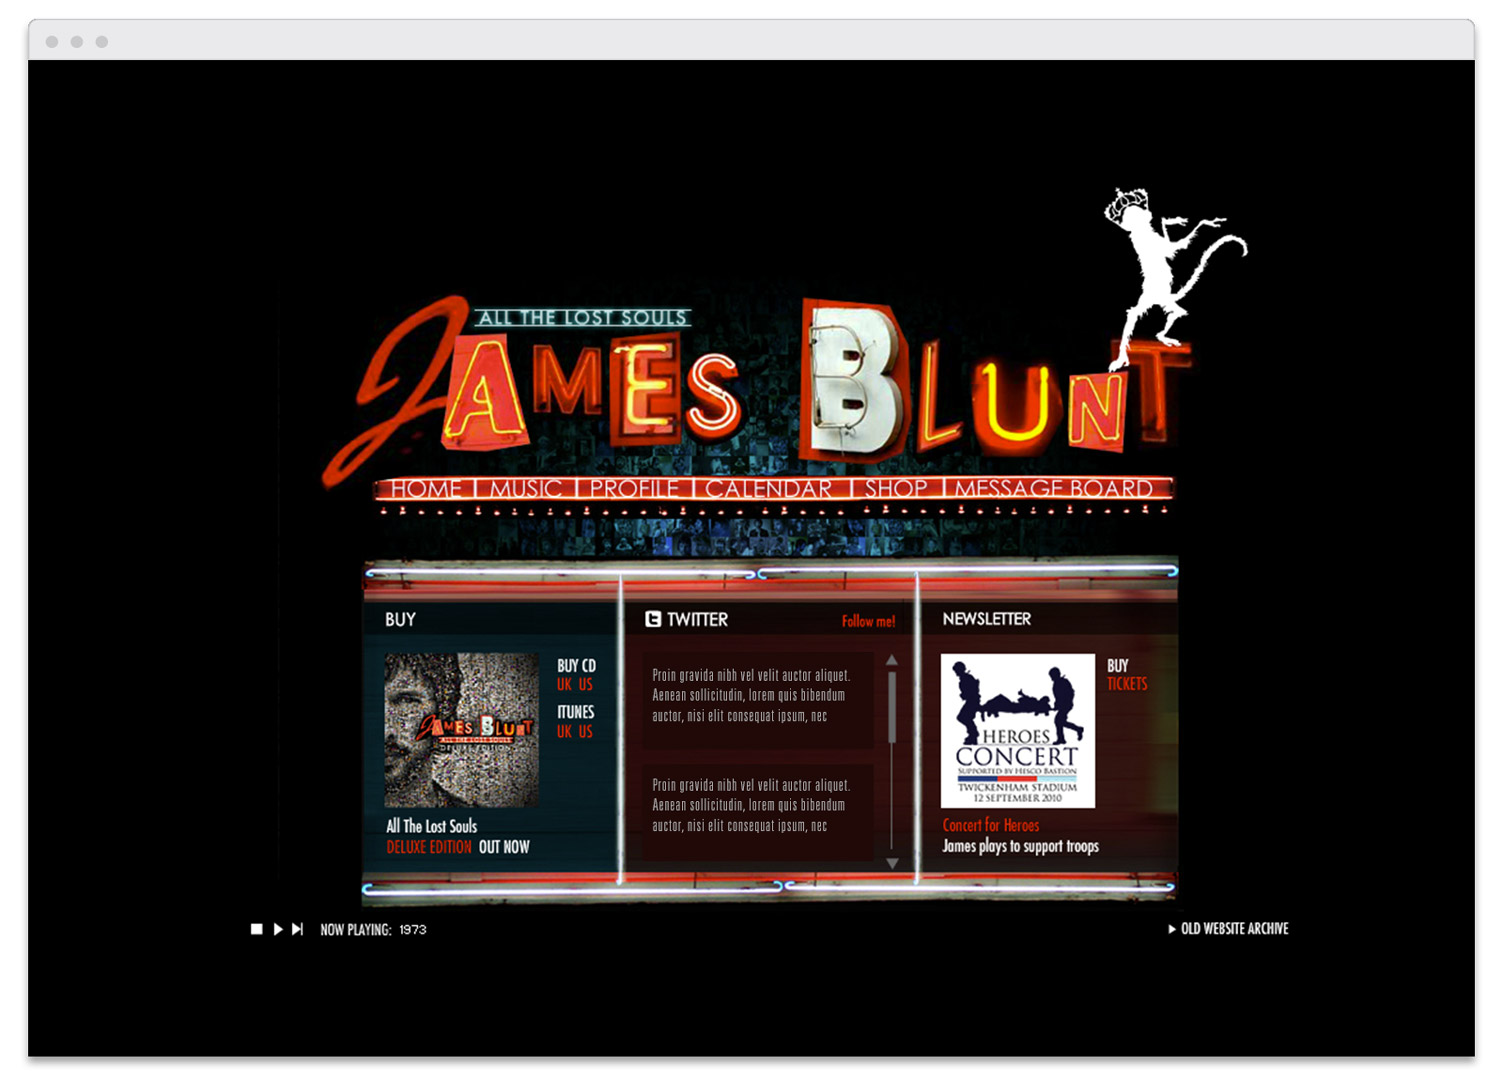 JamesBlunt_Slide_Browser_Home